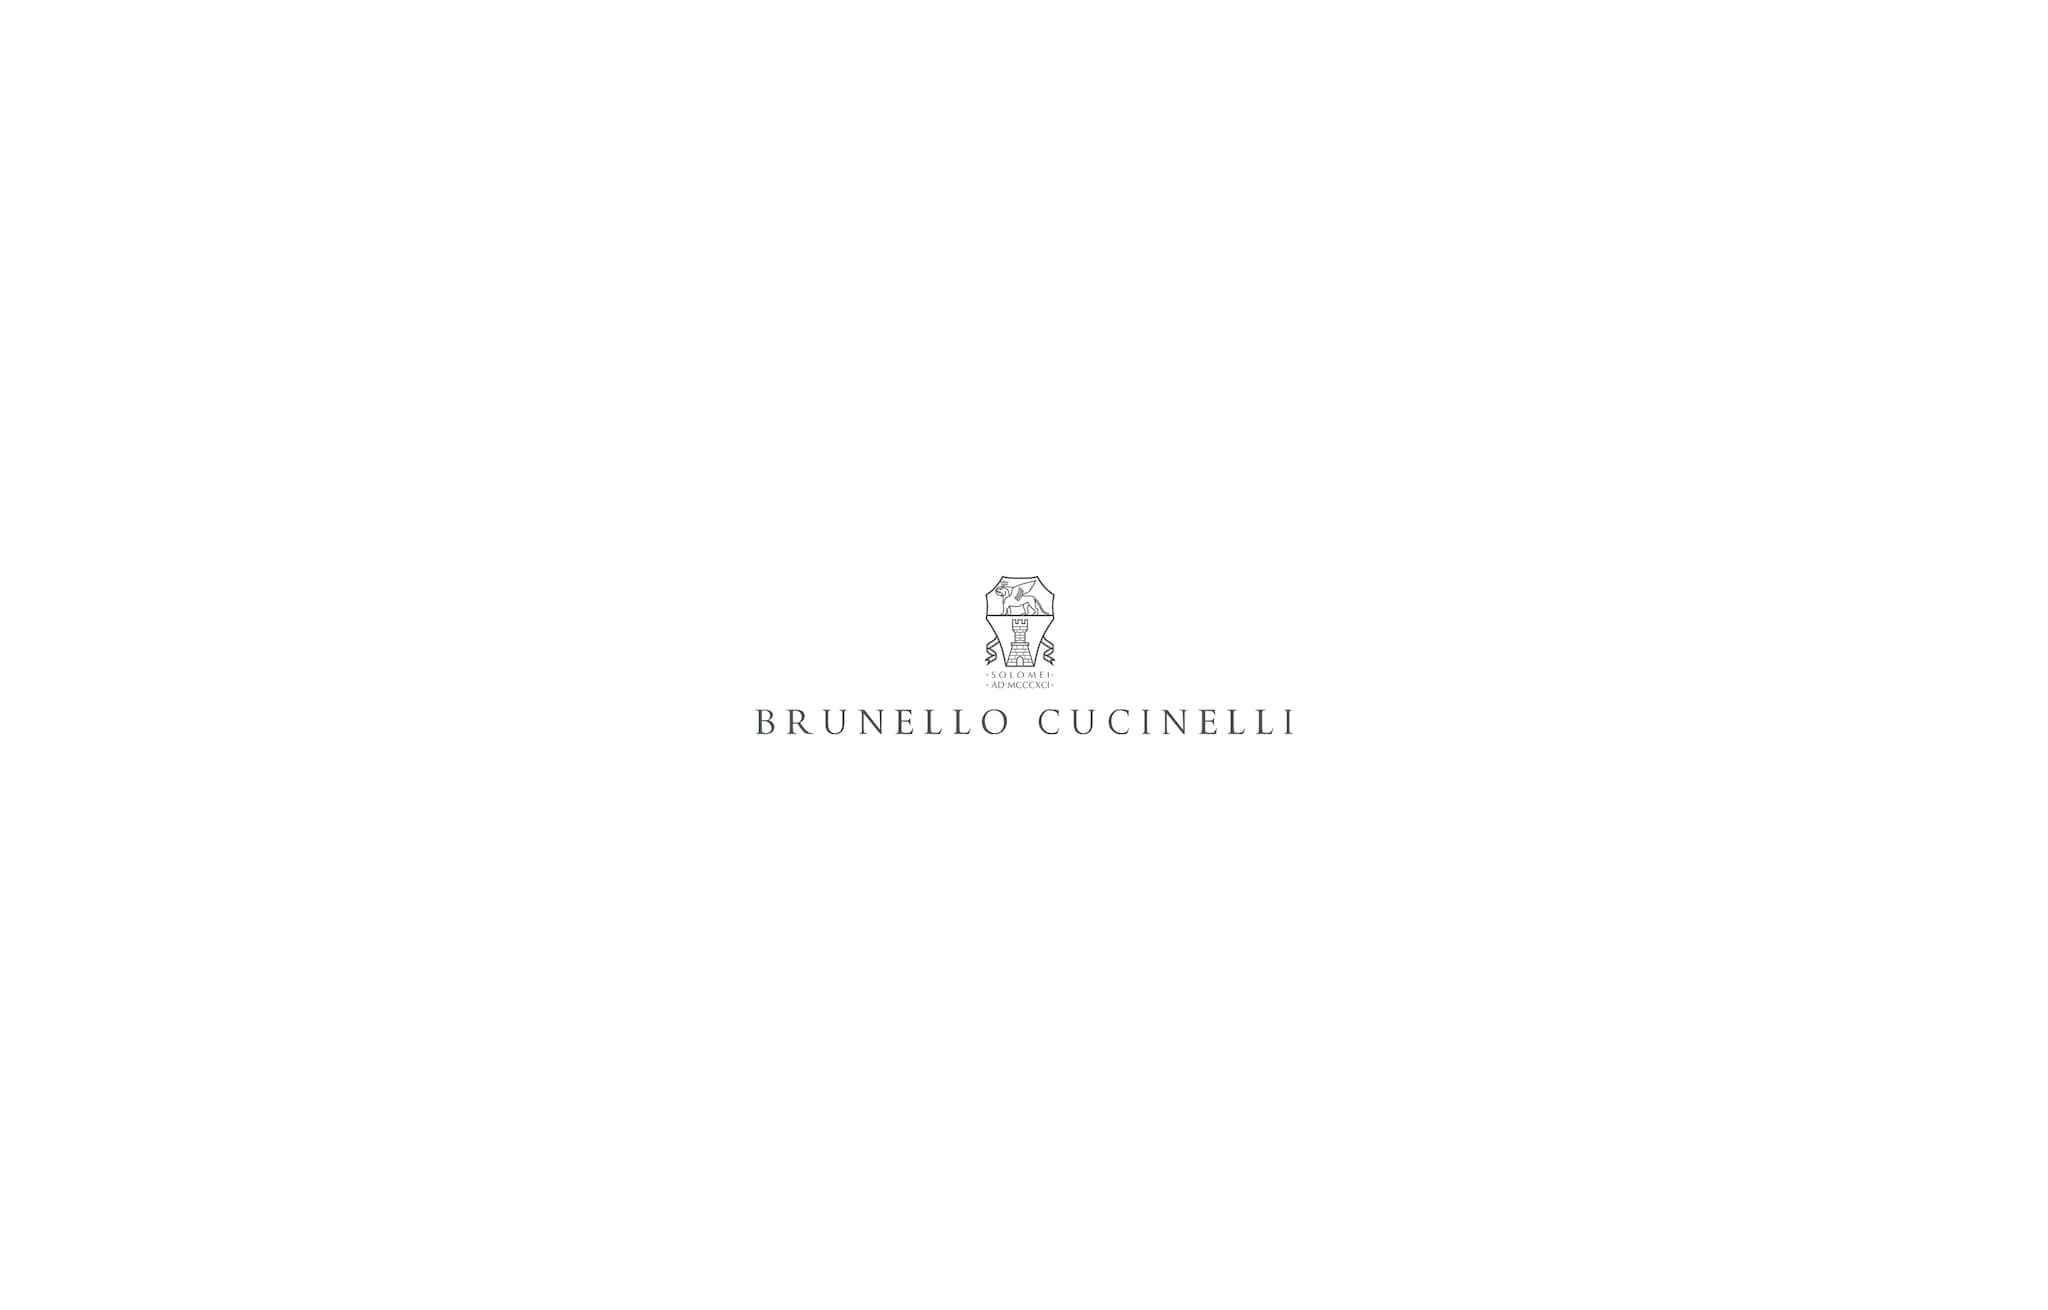  リネン ダウンベスト デニムブルー メンズ - Brunello Cucinelli 